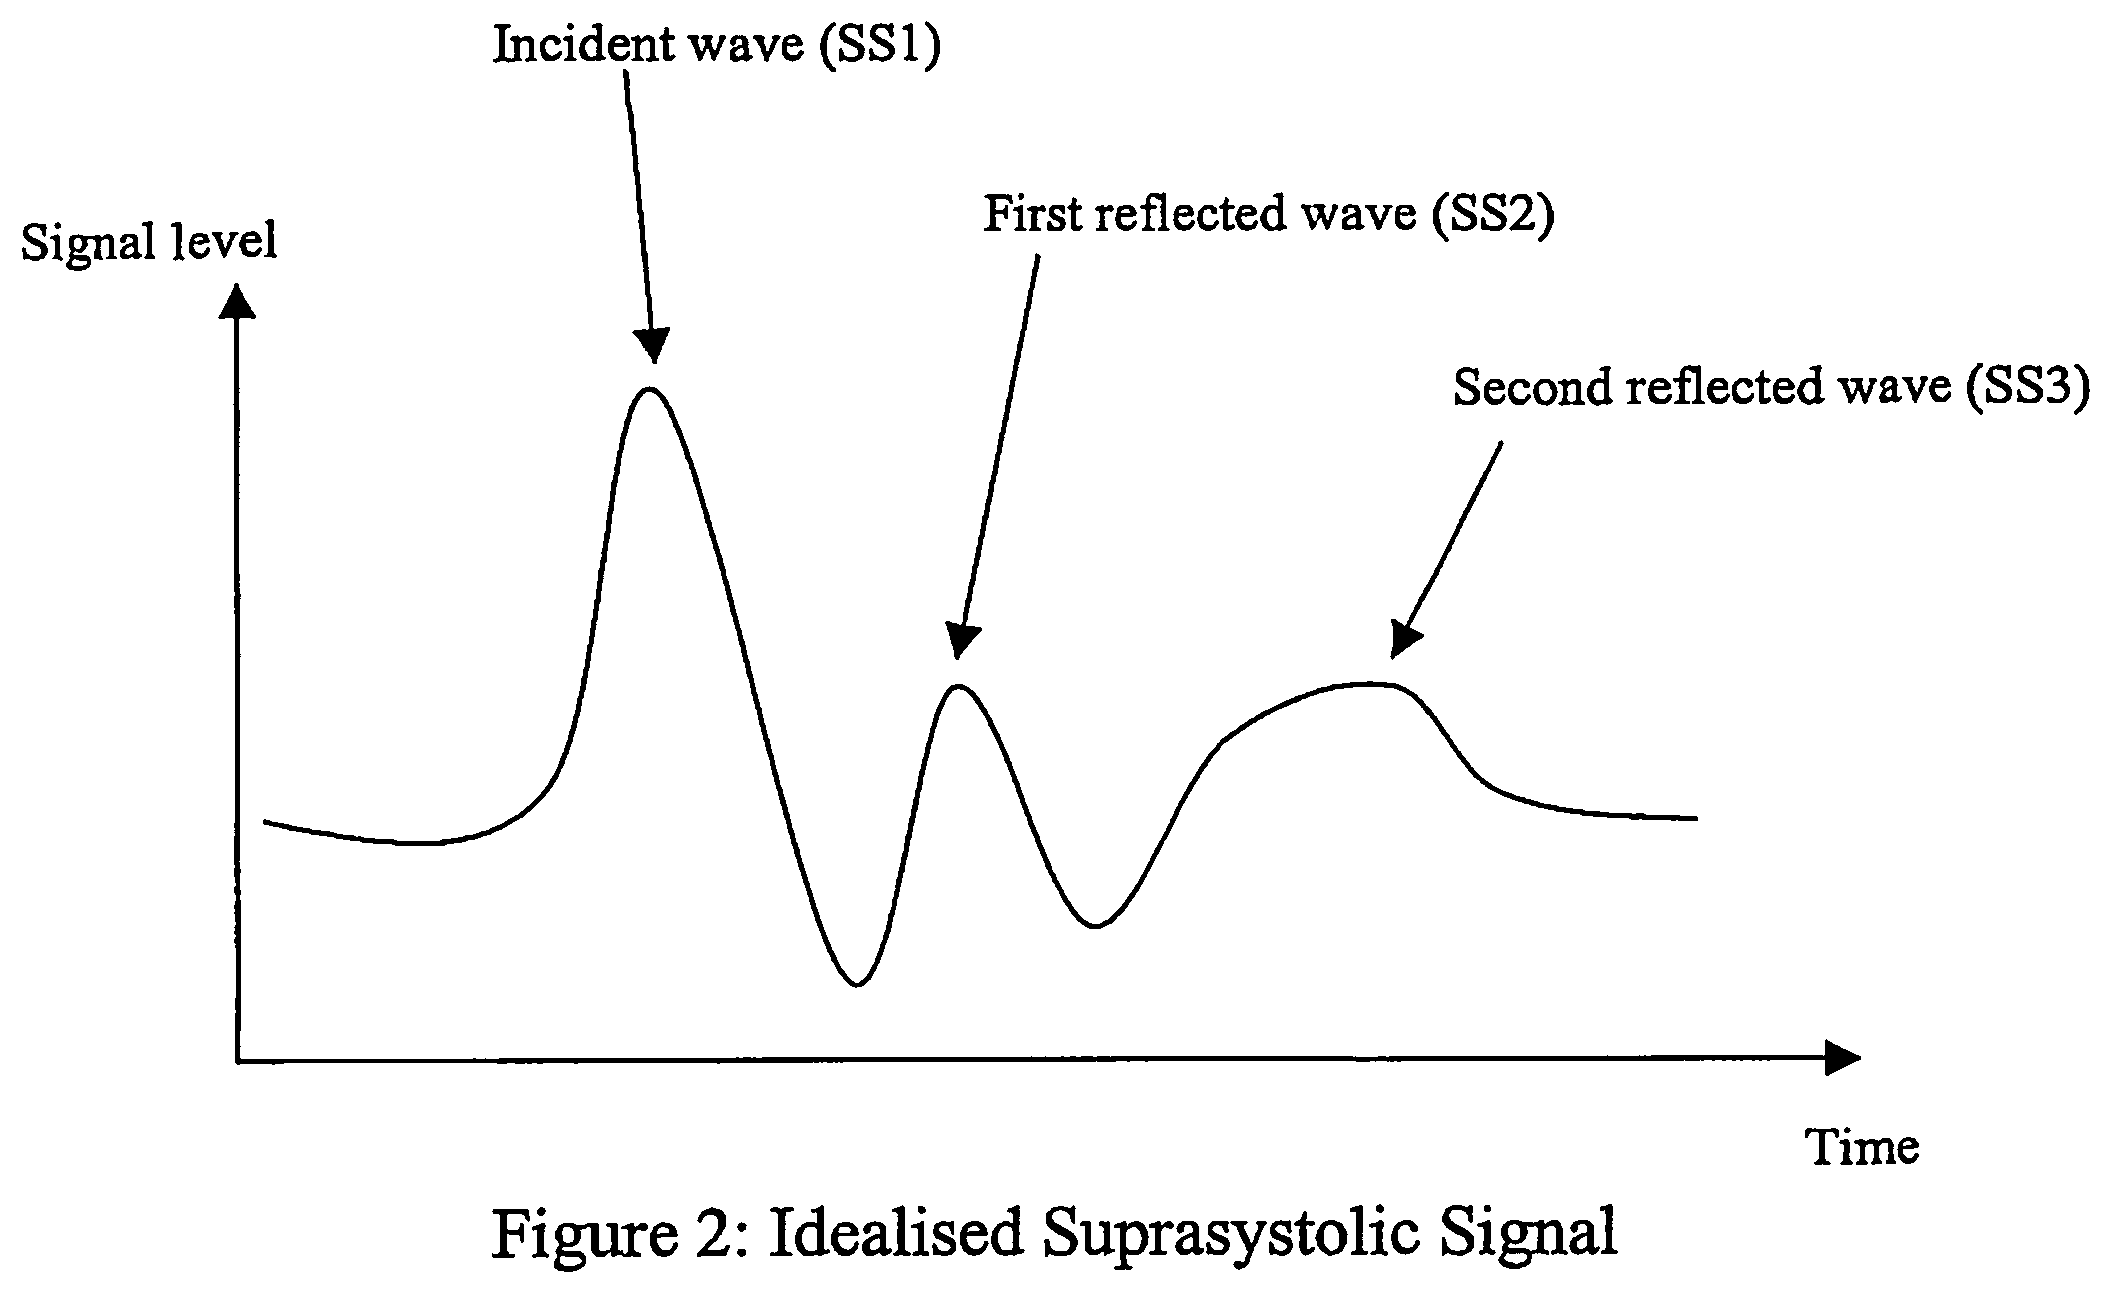 Non-invasive measurement of suprasystolic signals